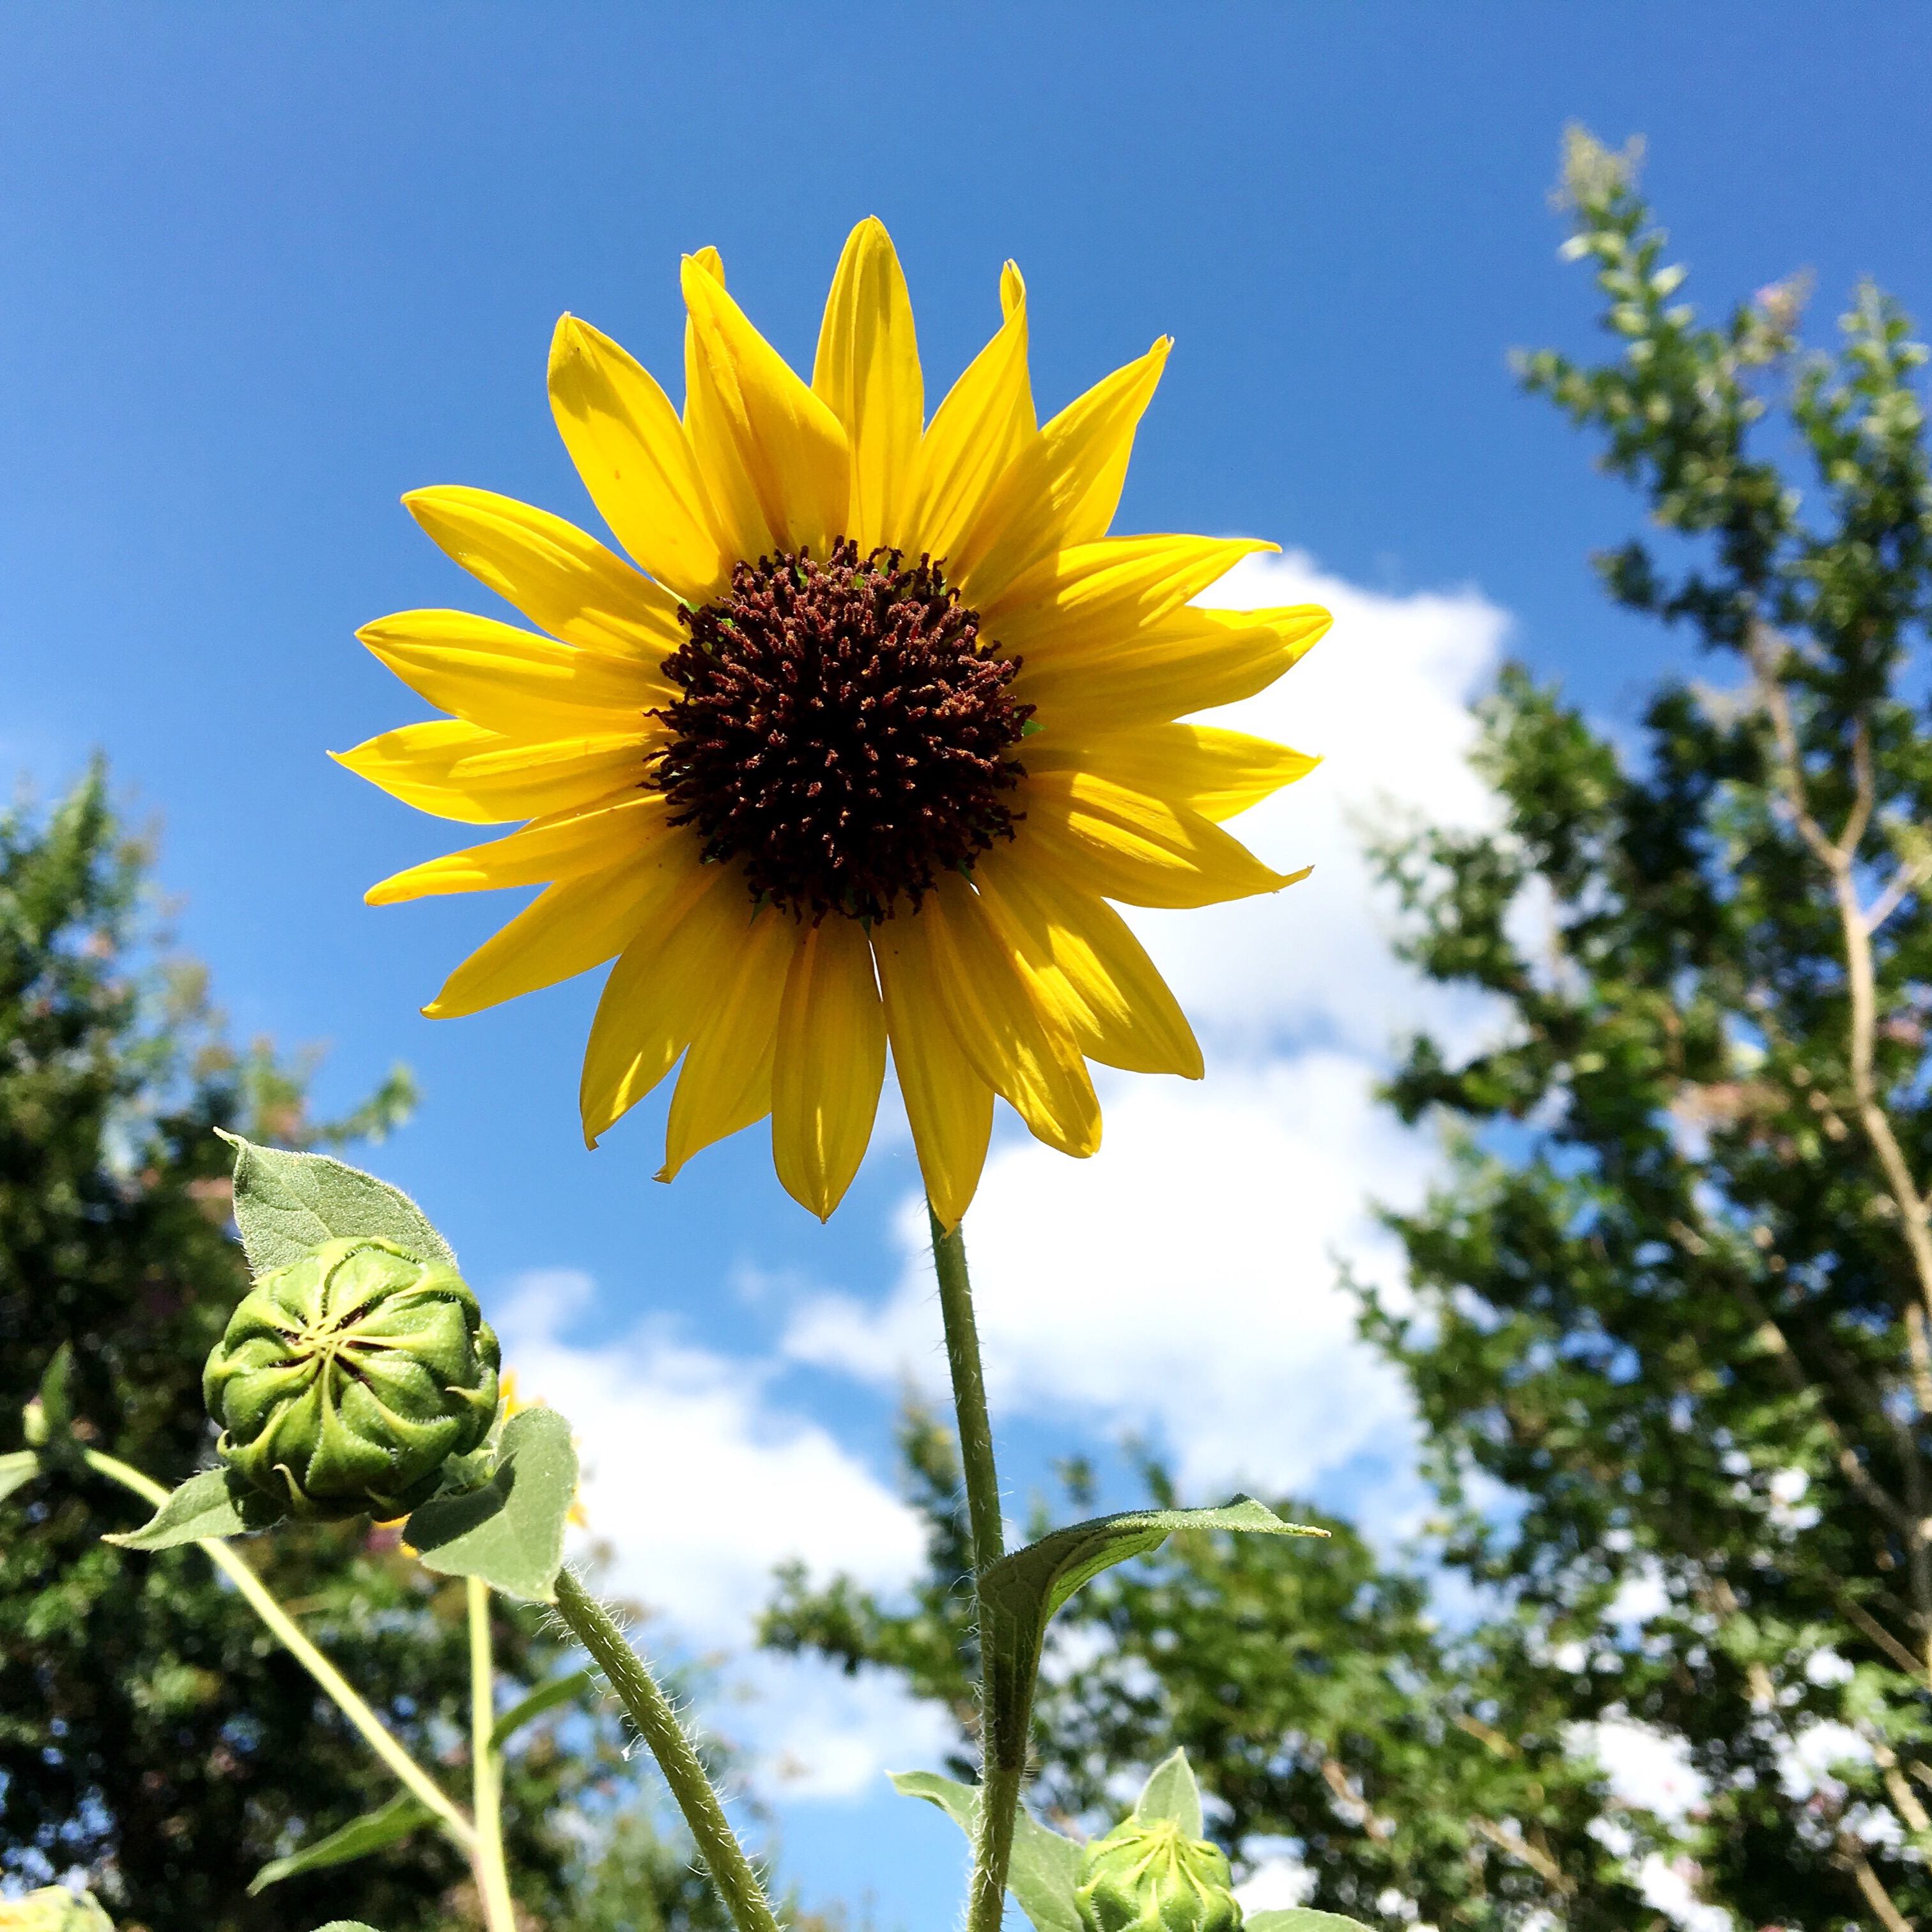 Smile, Sunflower.